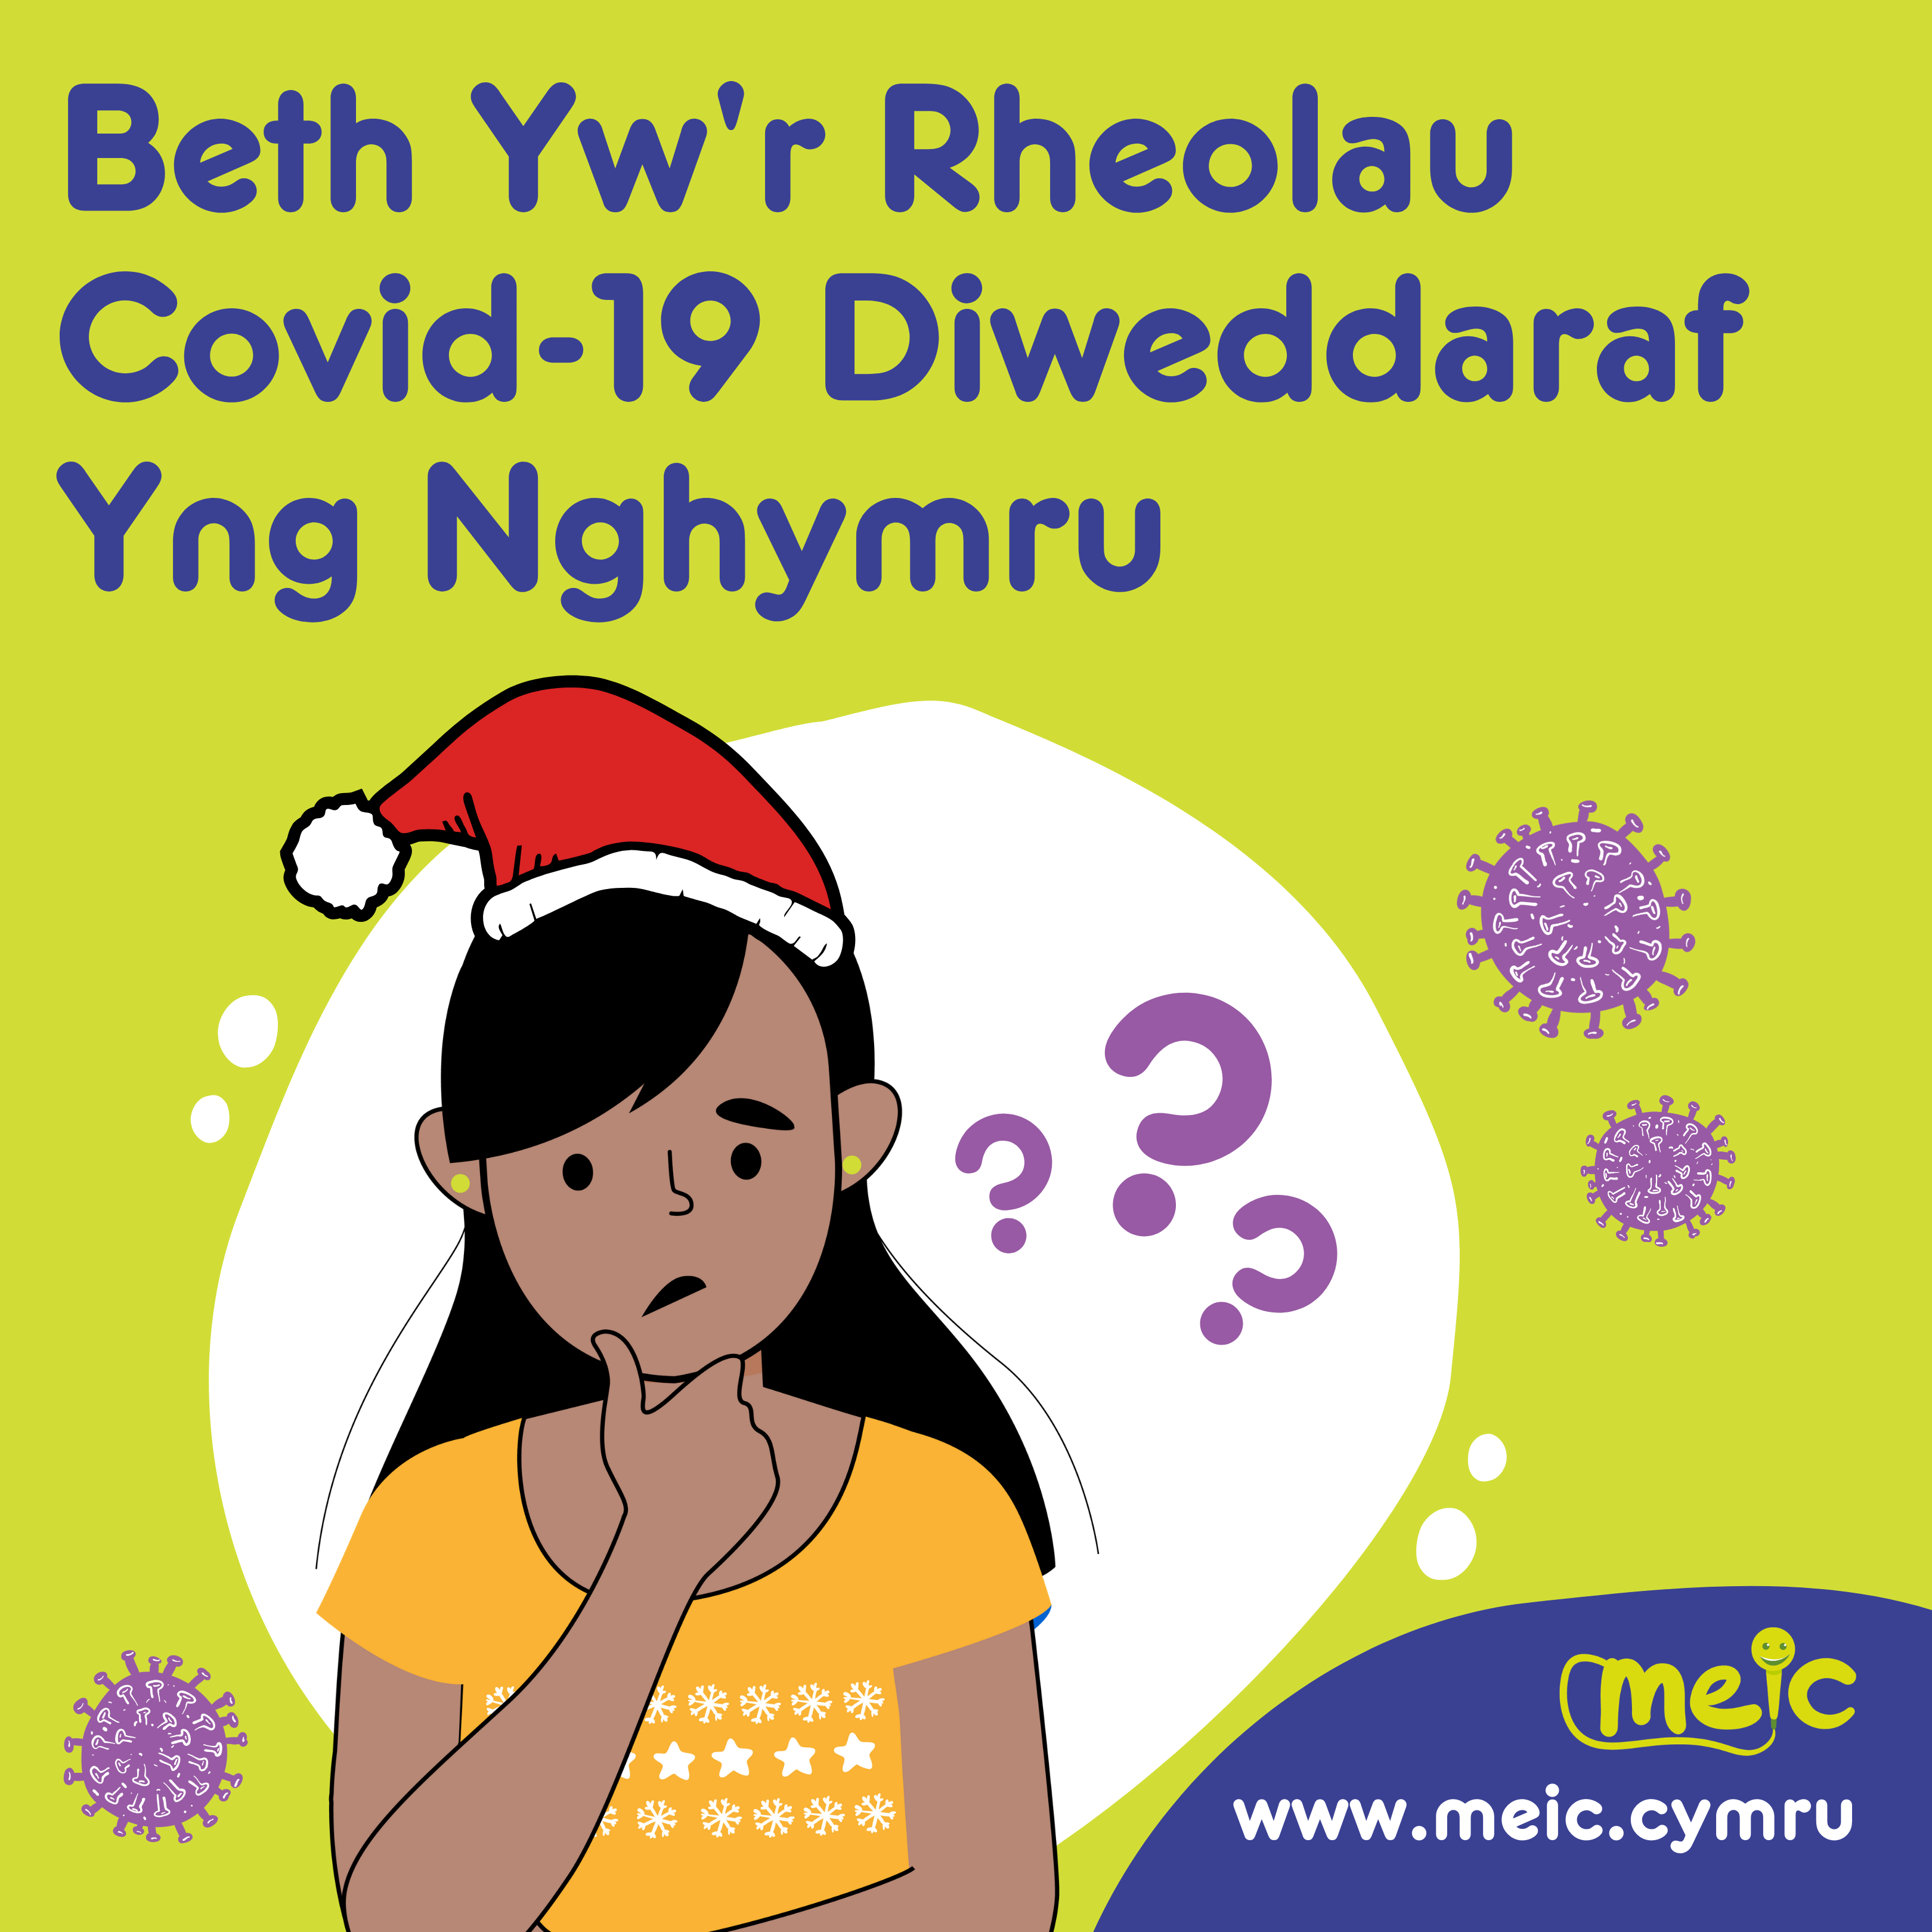 Beth Yw’r Rheolau Covid-19 Diweddaraf Yng Nghymru?